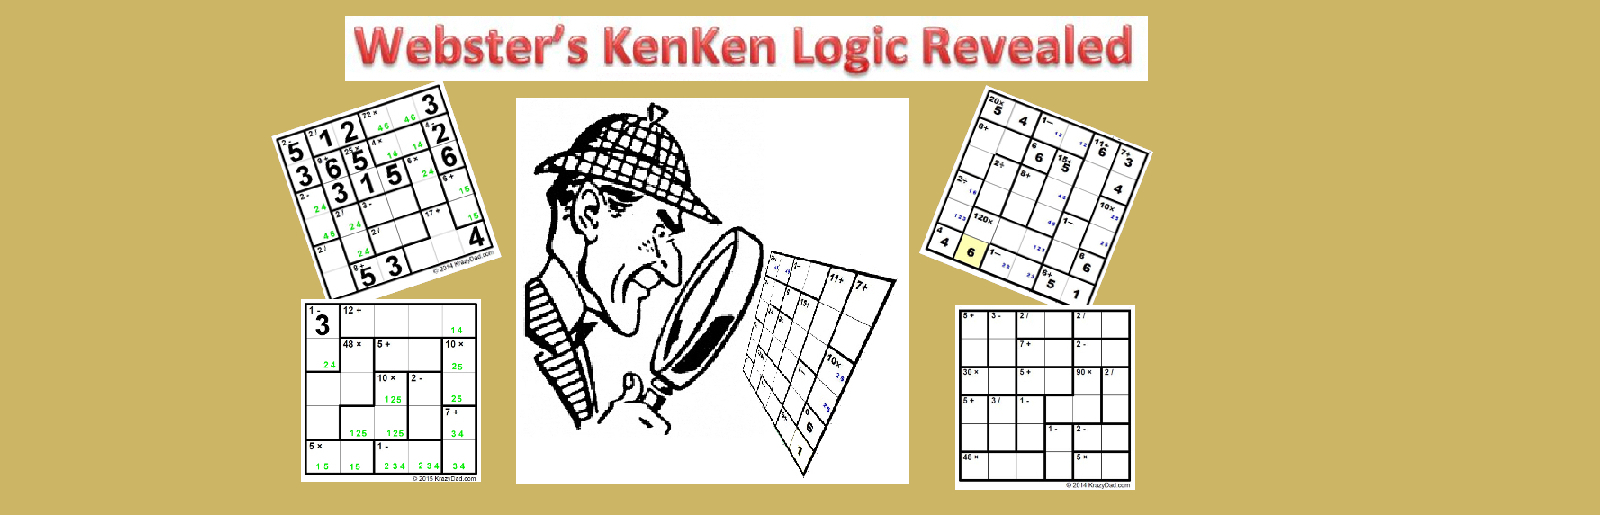 Webster's KenKen Puzzle Logic Revealed